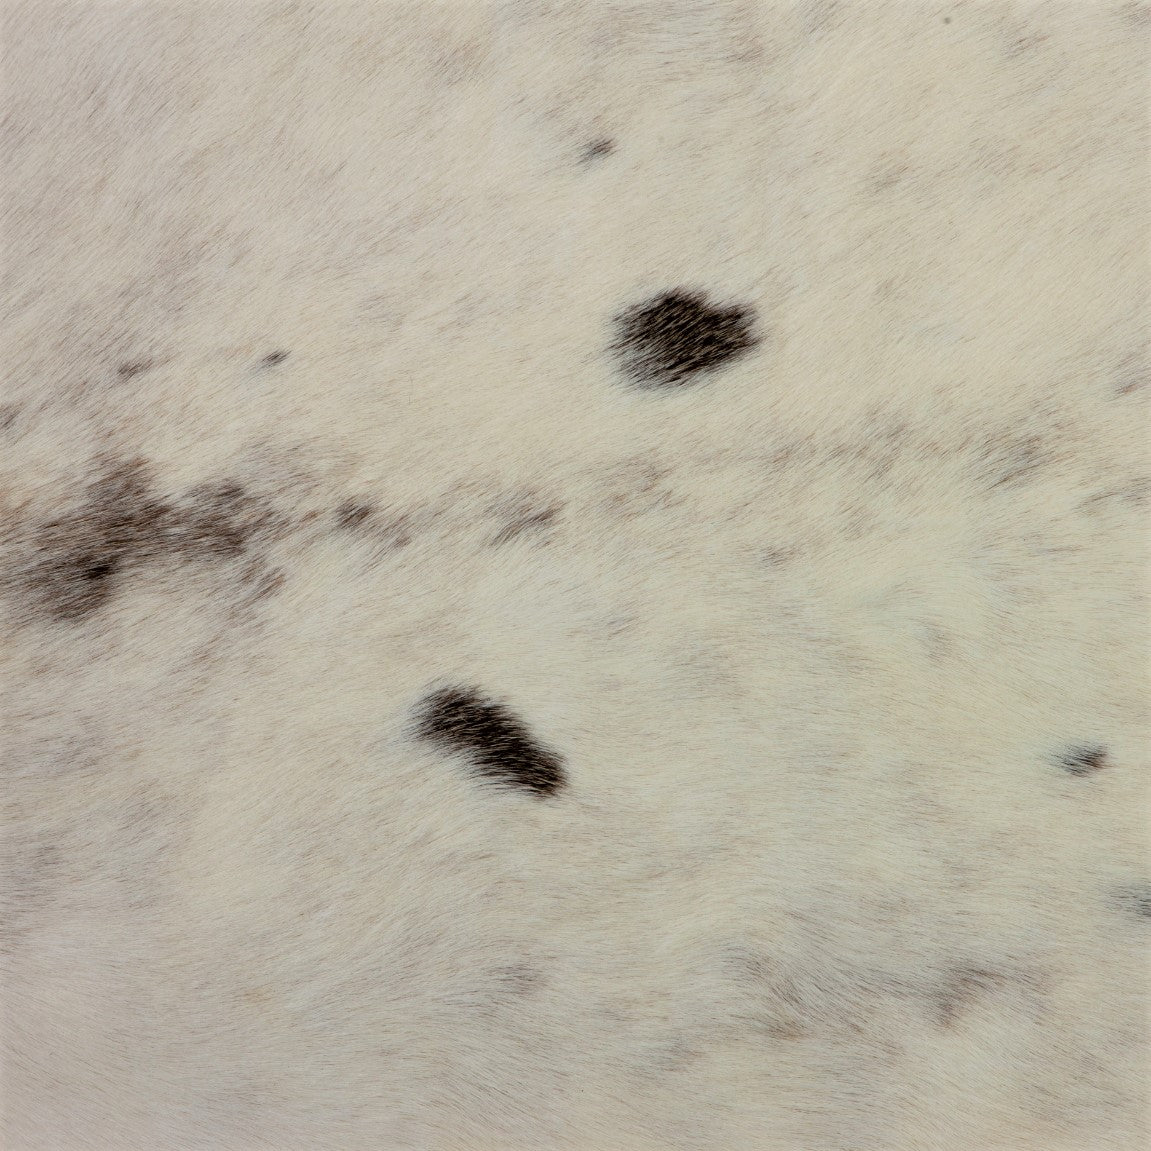 Caribou / Reindeer Skin - White (detail)